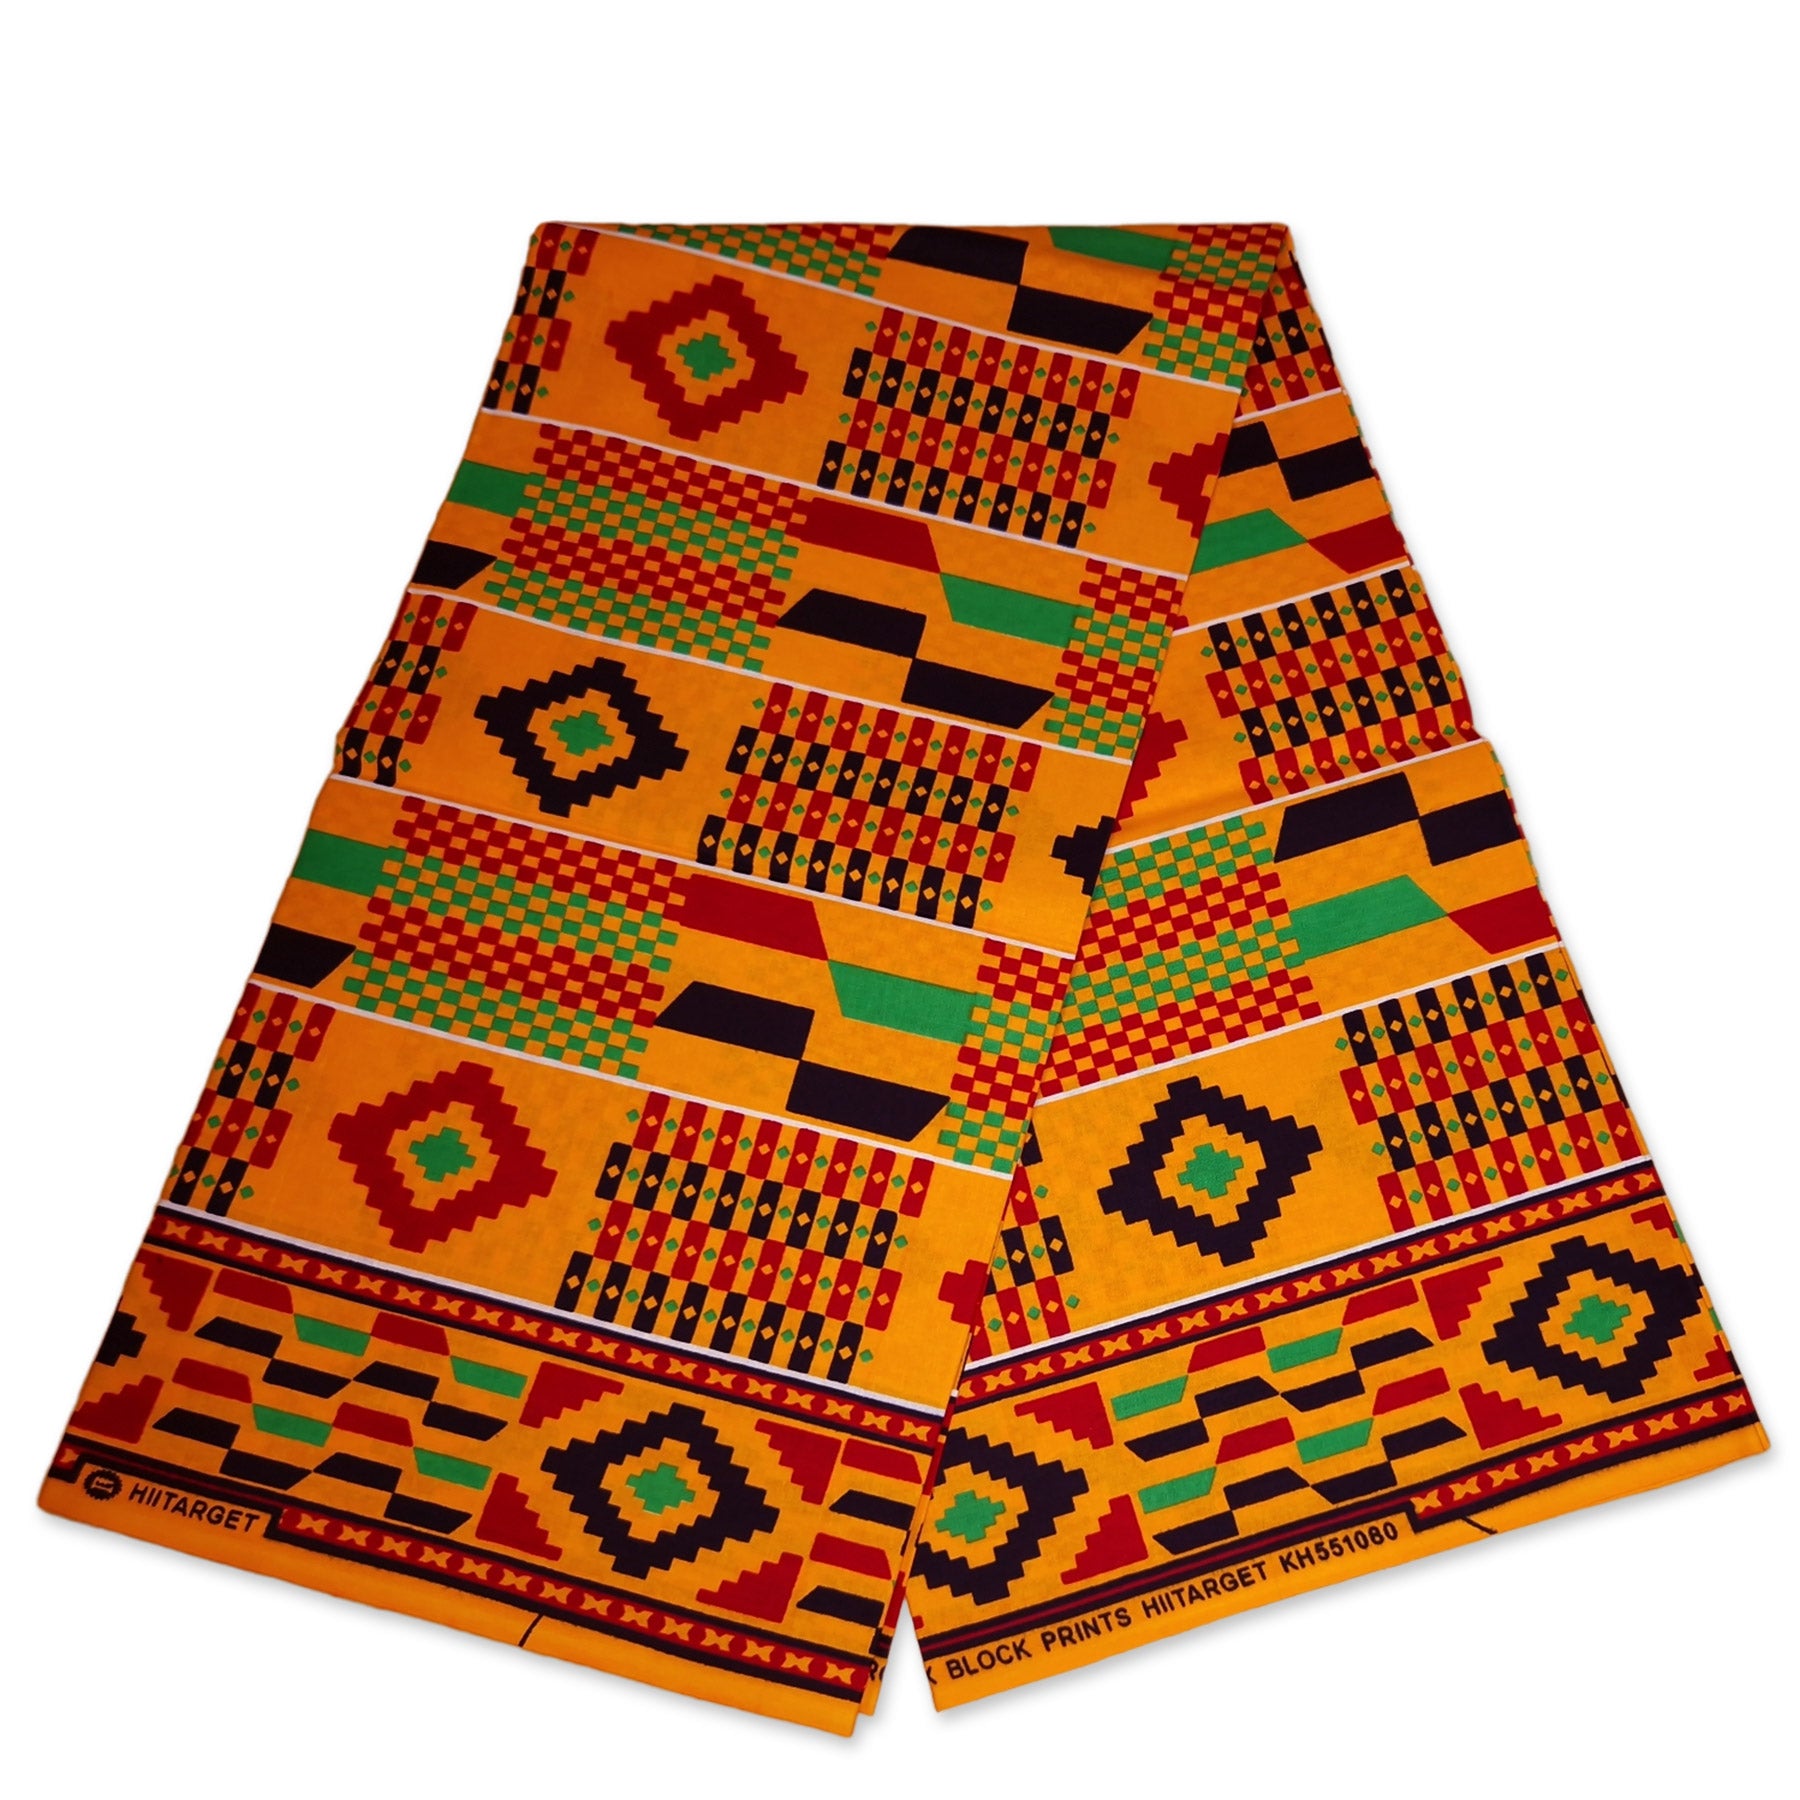 African kente print fabric / Ghana wax cloth KT-3117 - 100% Cotton